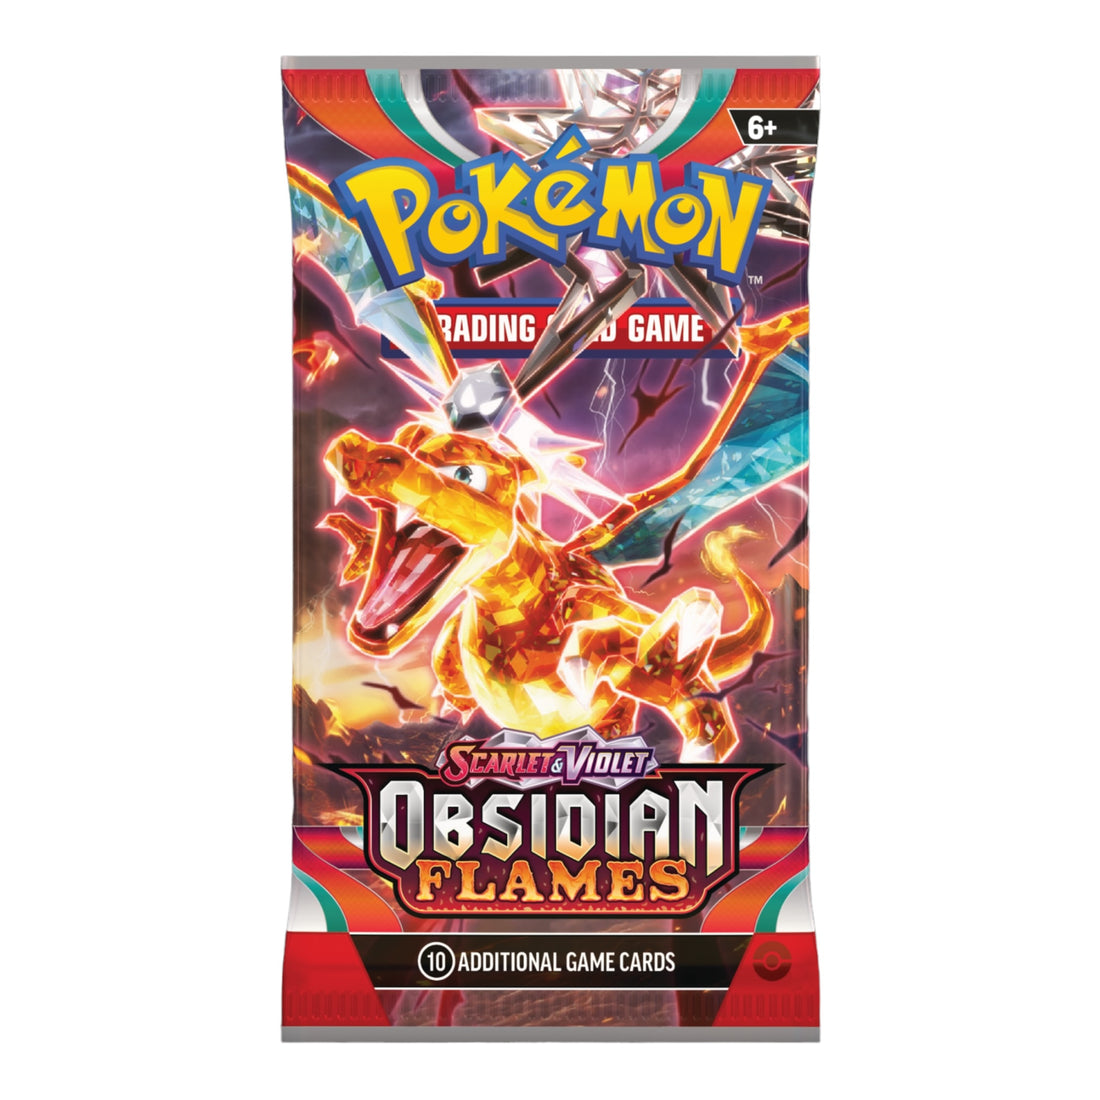 Pokémon Scarlet and Violet Obsidian Flames Booster Pack